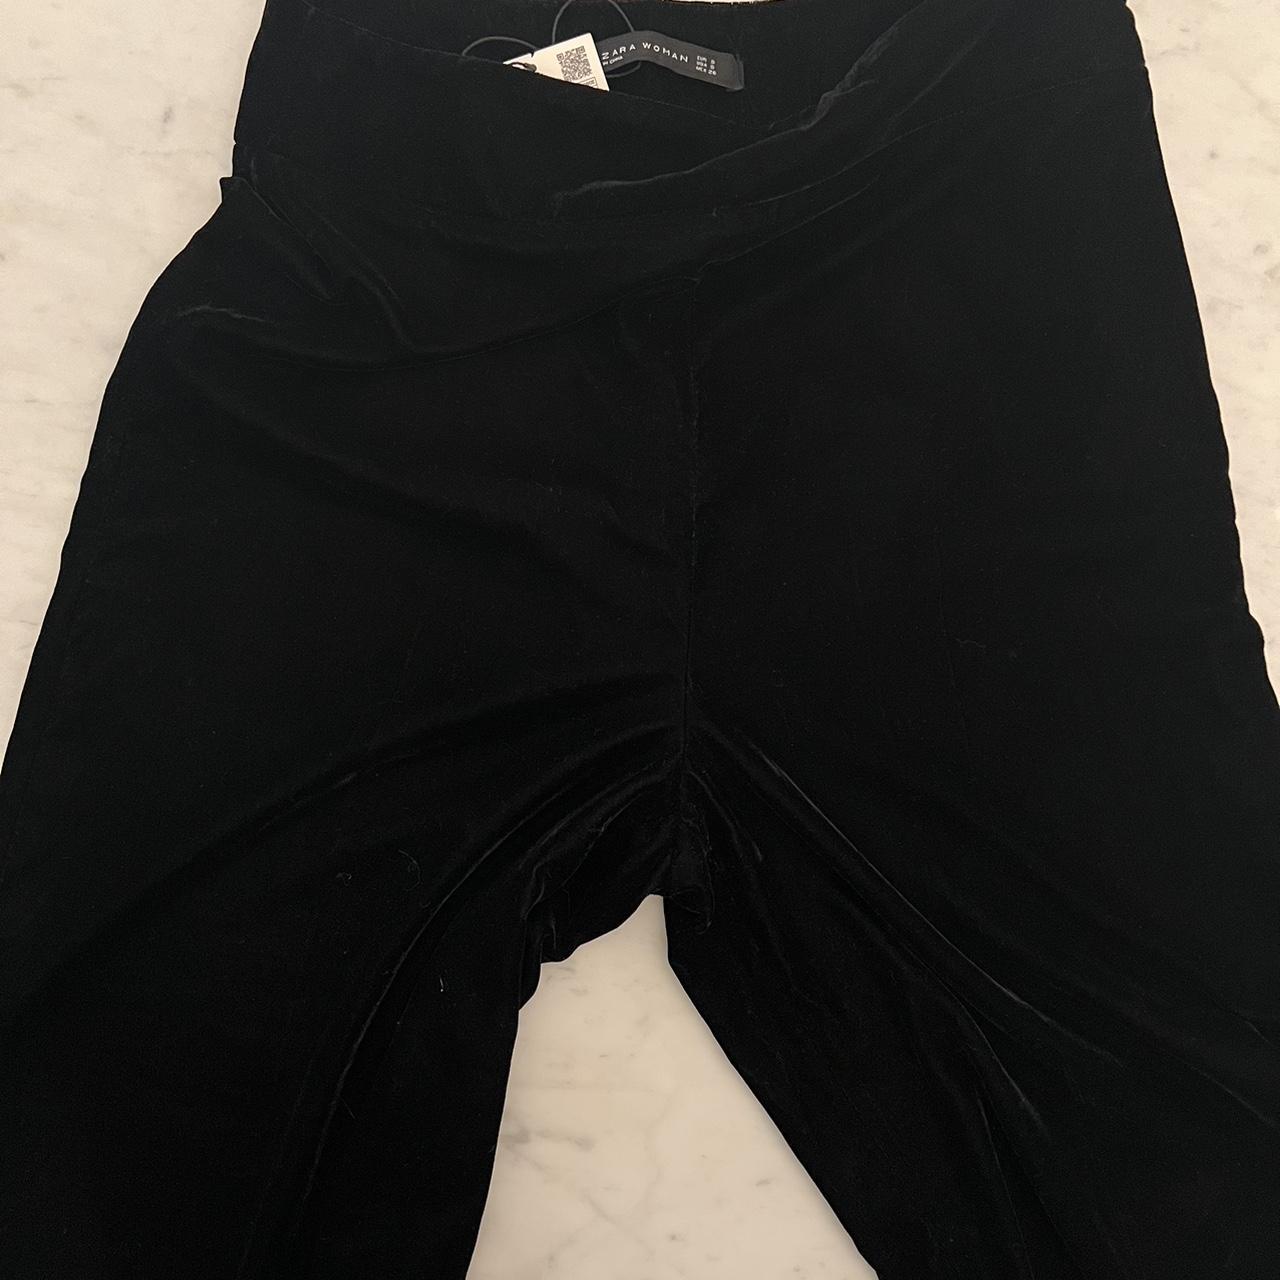 ZARA's Wideleg Velvet Tie Dye Pants in small size - Depop